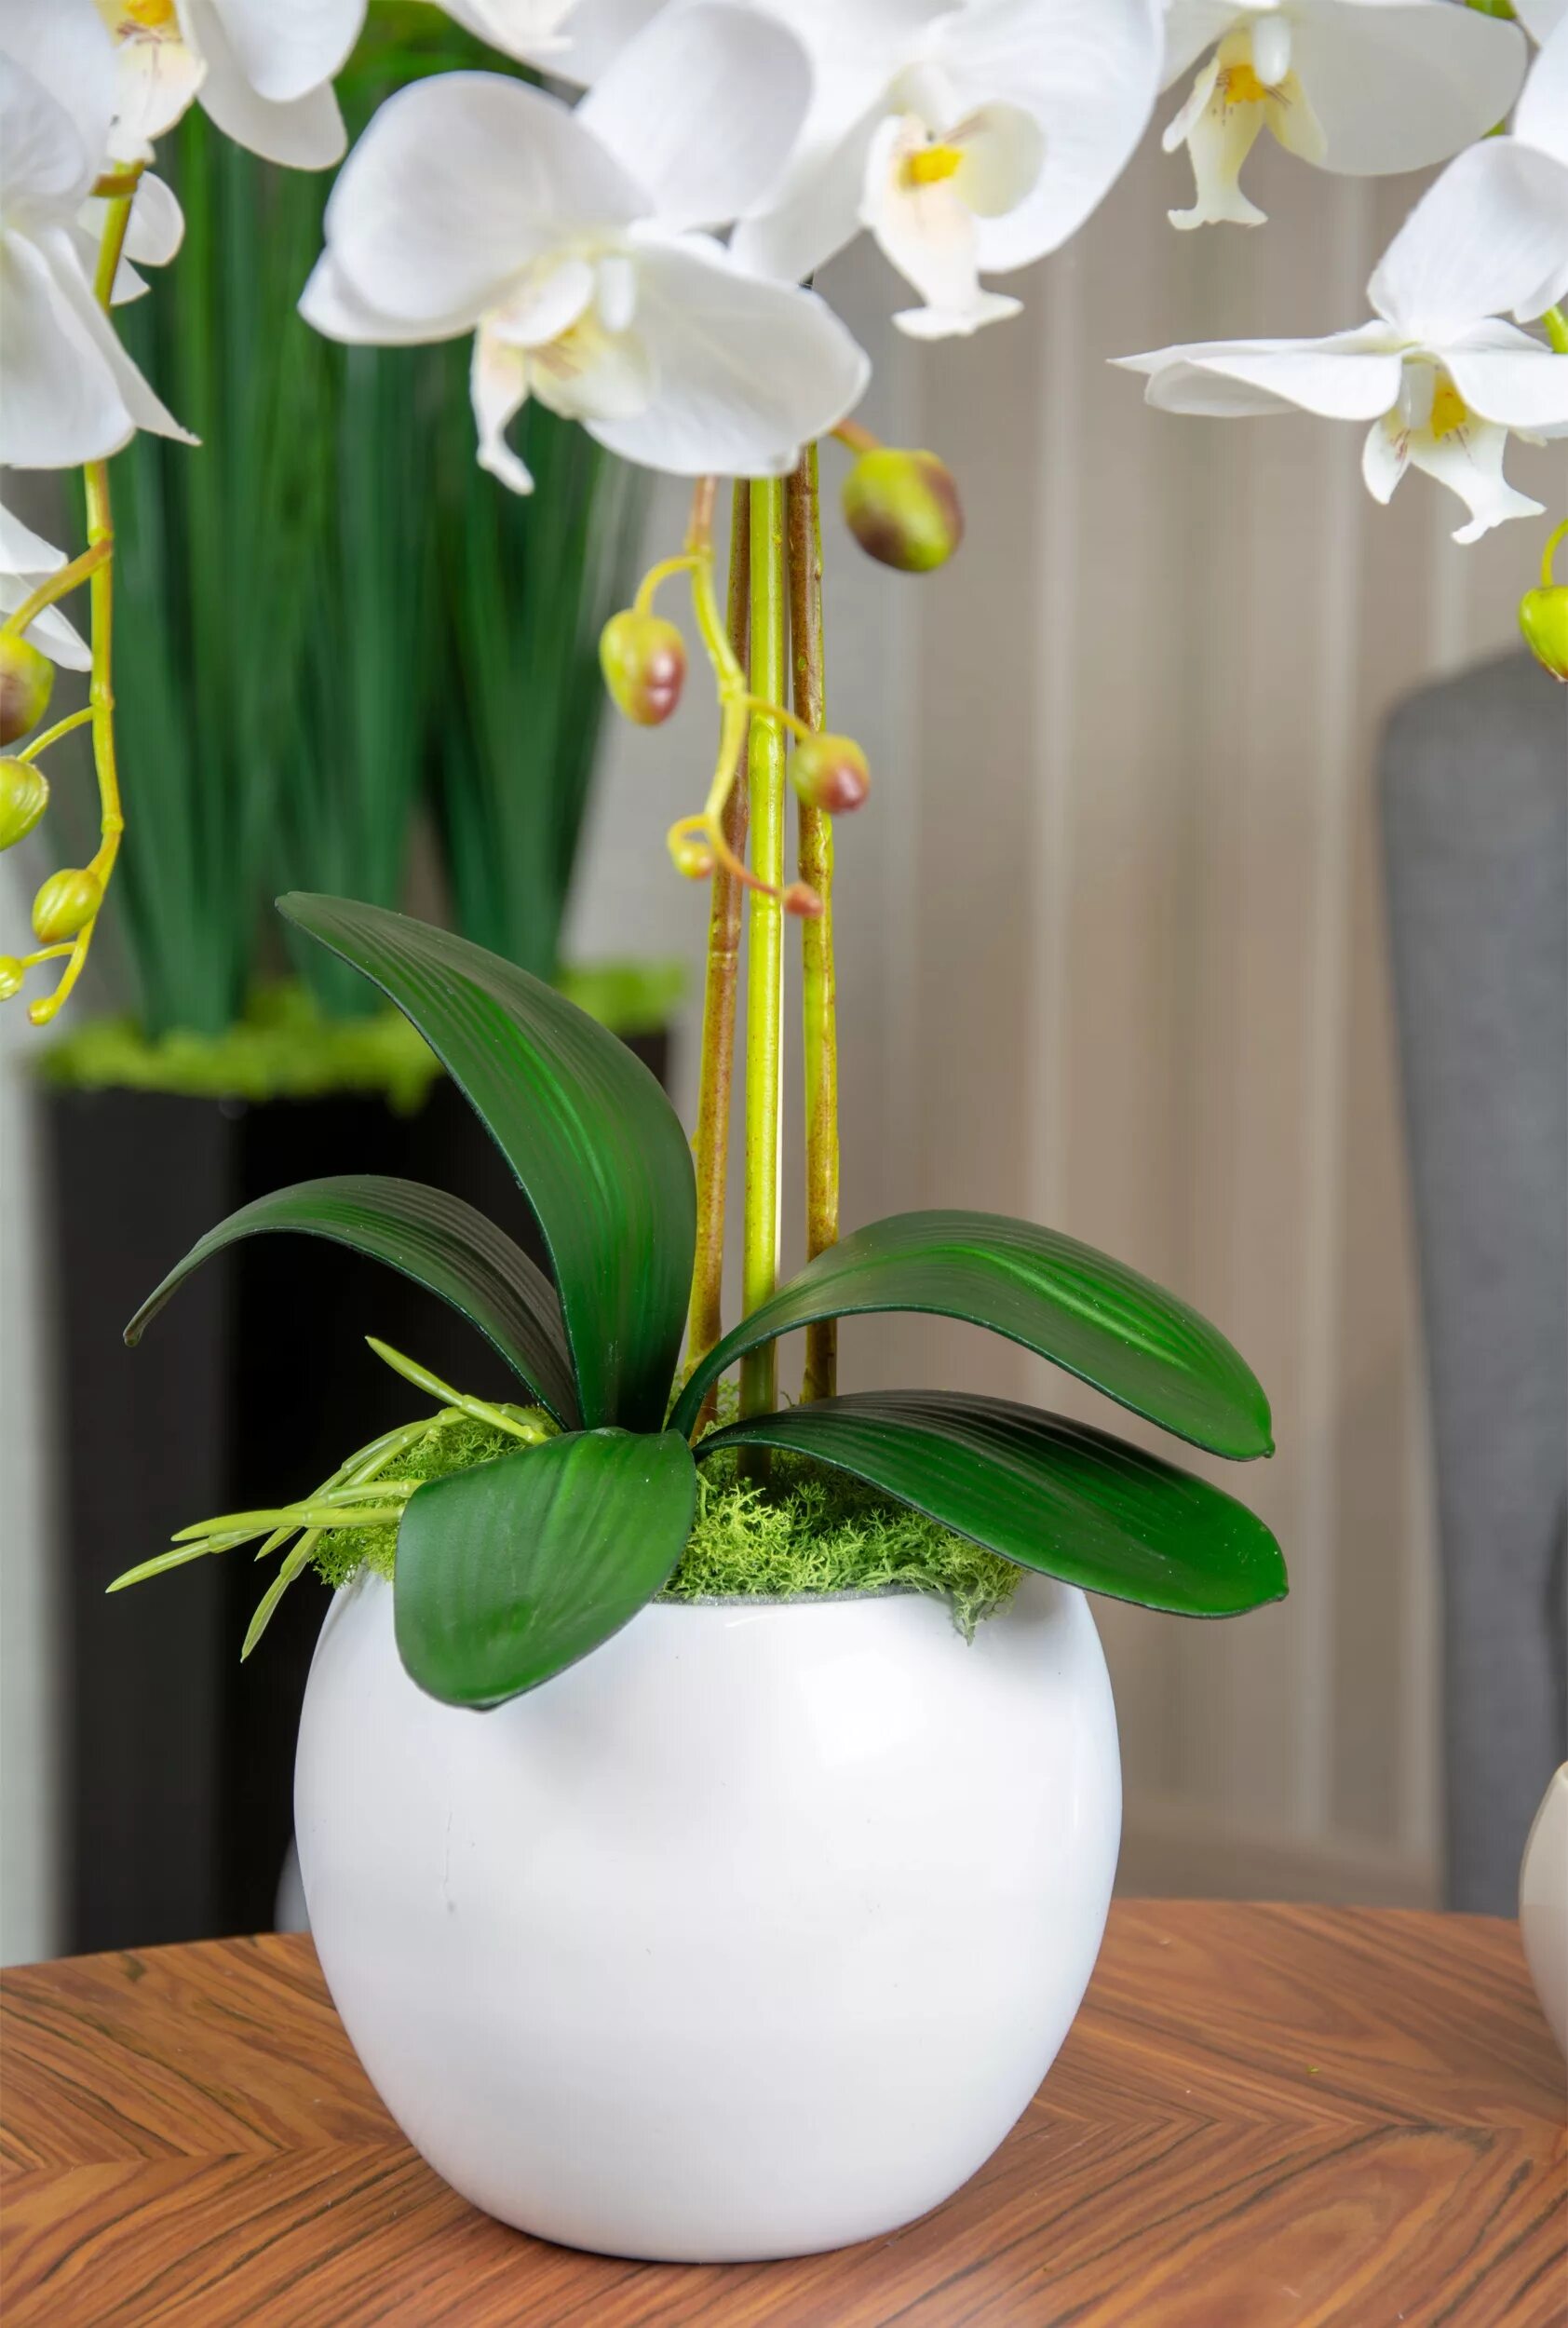 Орхидея в горшке купить в нижнем. Фаленопсис в горшке. Pure фаленопсис. Белая Орхидея в горшке. Орхидея в горшочке.